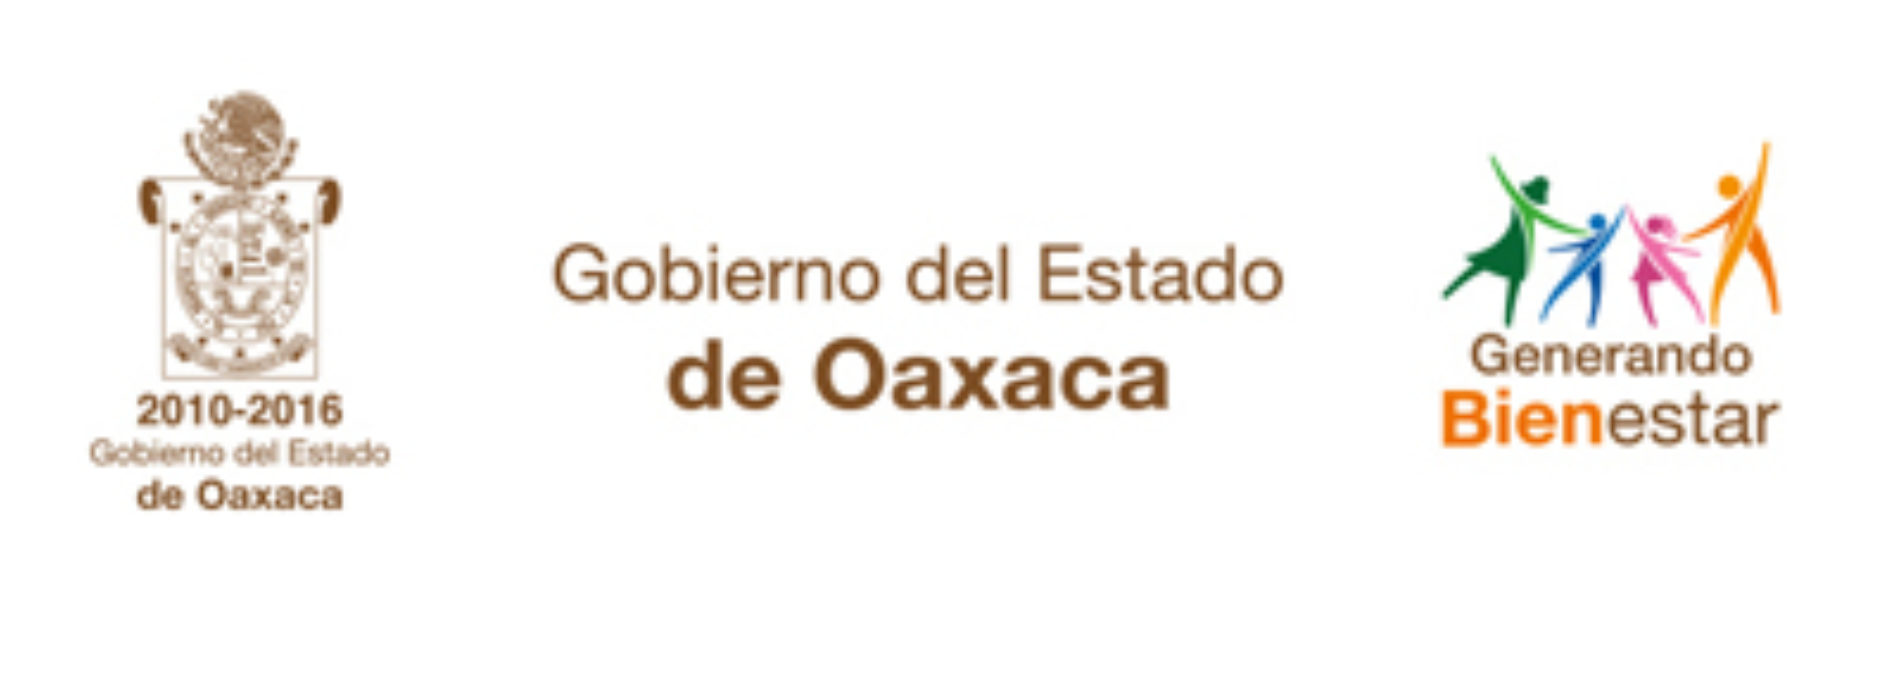 Gobierno de Oaxaca fortalece Plan de Austeridad para proteger empleo de trabajadores